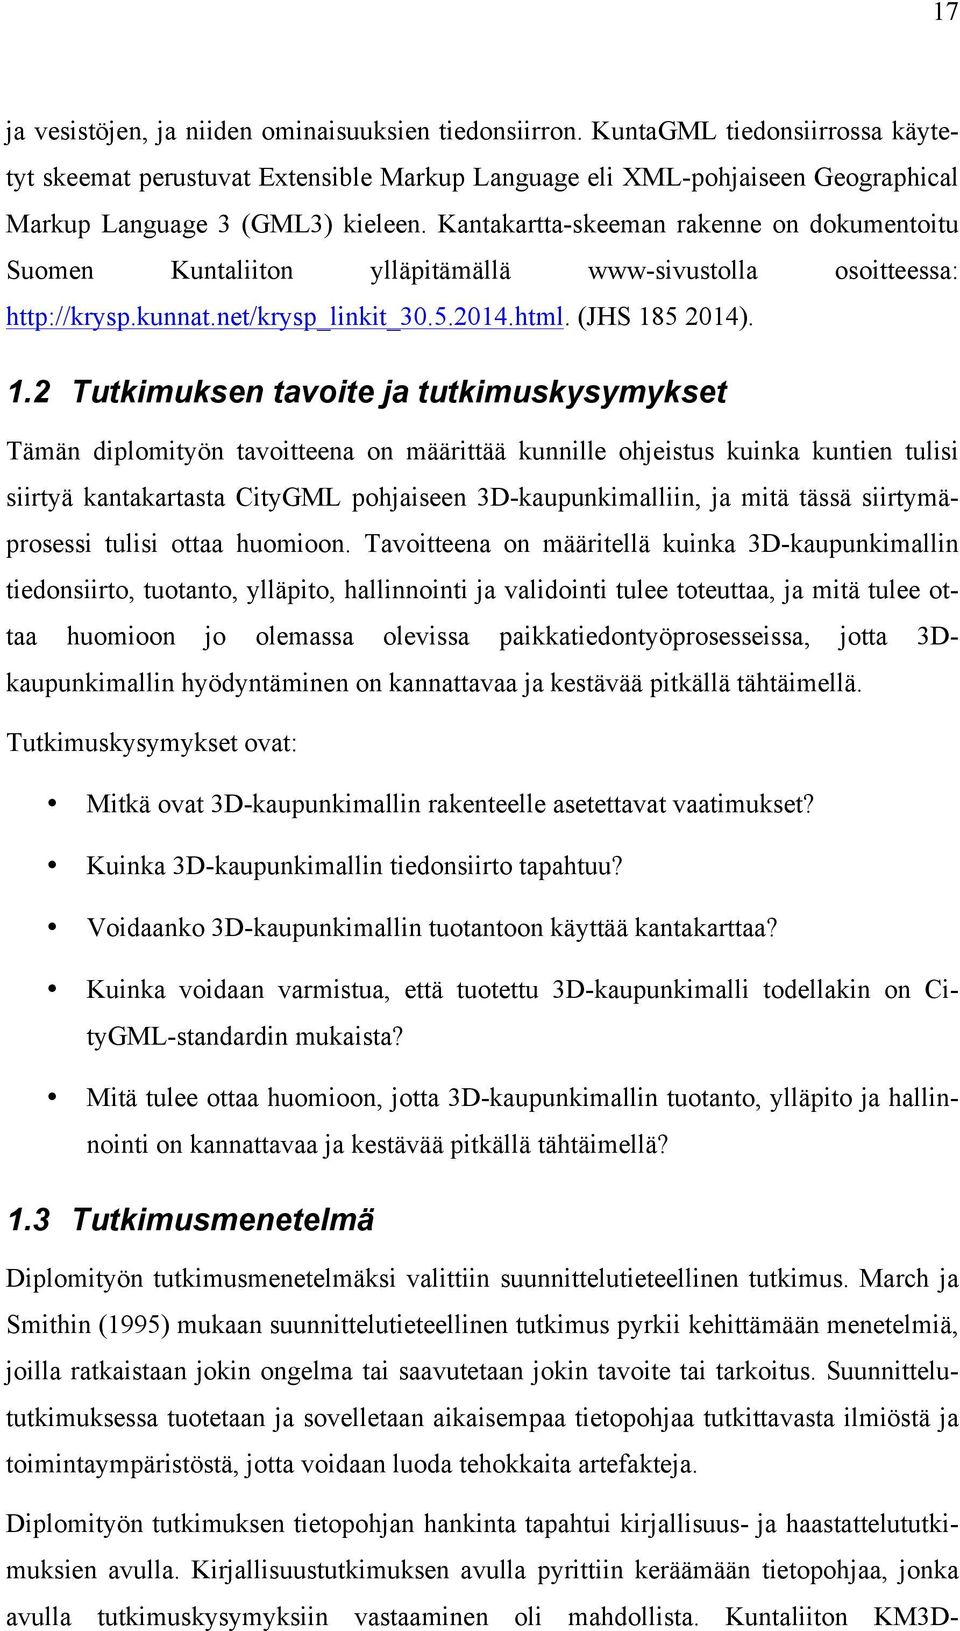 Kantakartta-skeeman rakenne on dokumentoitu Suomen Kuntaliiton ylläpitämällä www-sivustolla osoitteessa: http://krysp.kunnat.net/krysp_linkit_30.5.2014.html. (JHS 18